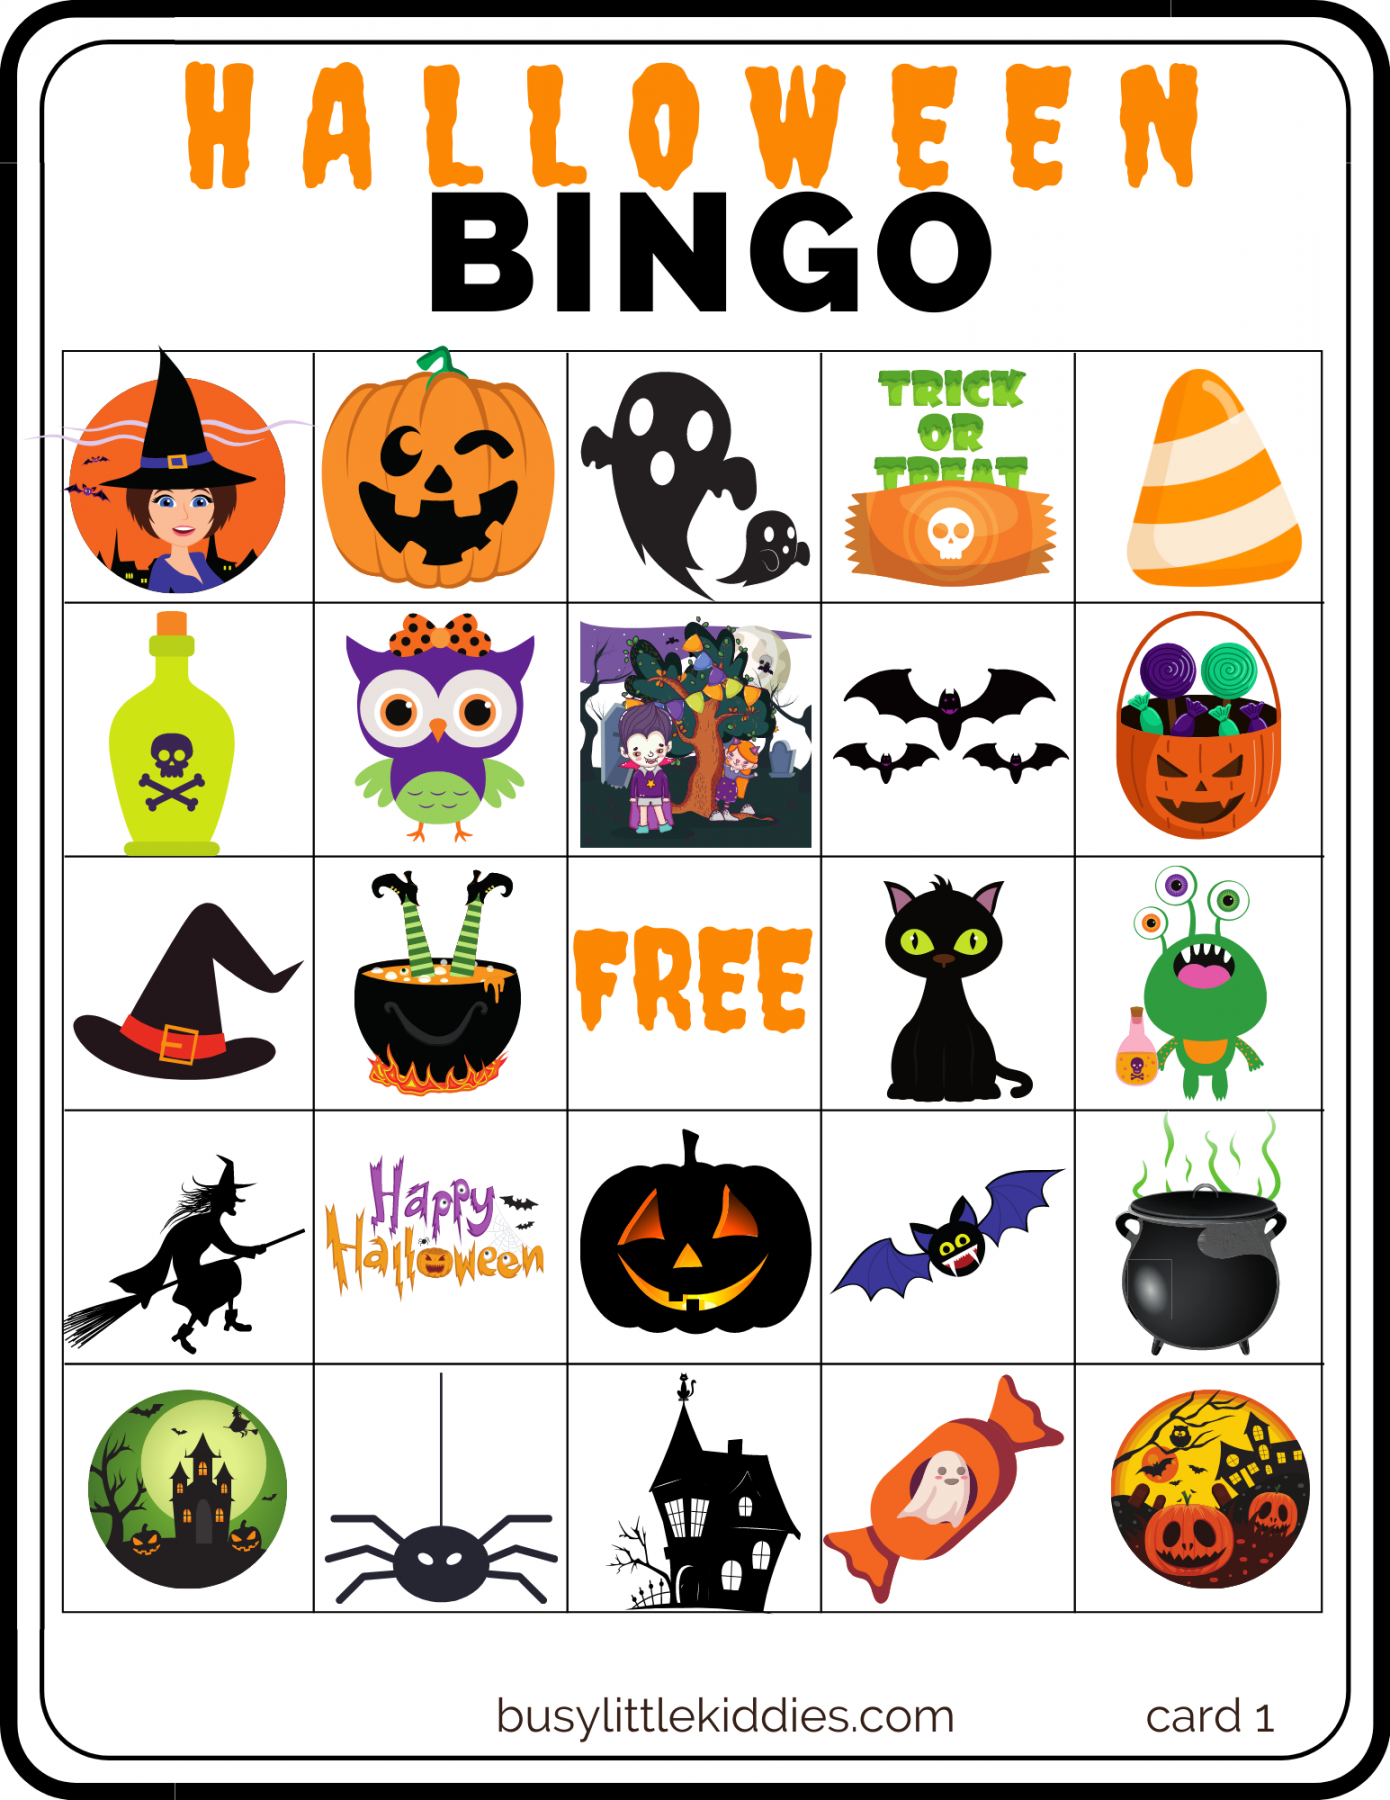 Free Printable Halloween Bingo - Printable - Halloween Bingo Free Printable with Pictures  players - Busy